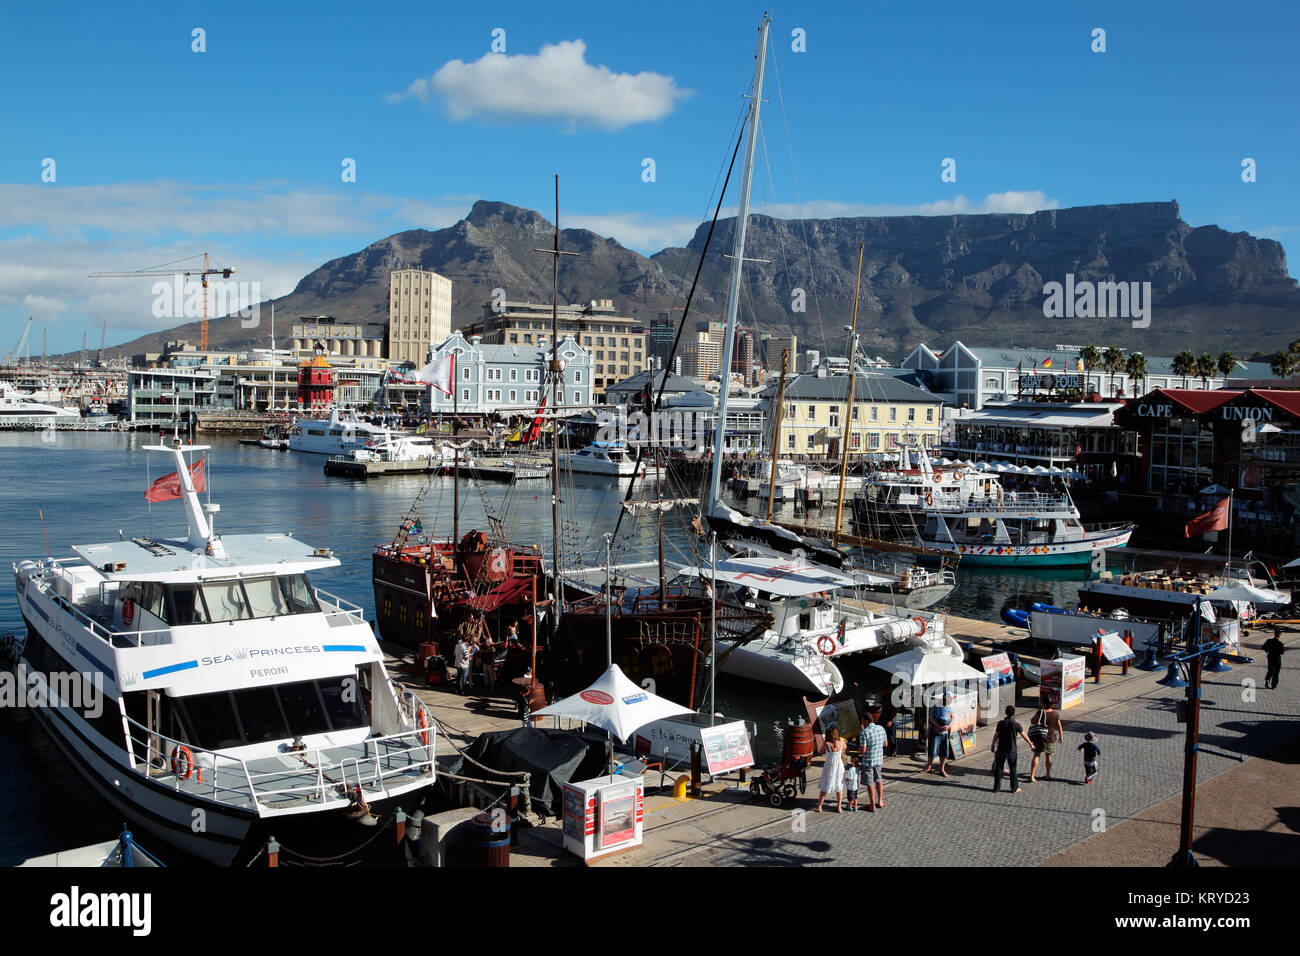 Kapstadt, Südafrika - 20. FEBRUAR 2012: Victoria und Alfred Waterfront, Hafen mit Booten, Geschäften, Restaurants und den berühmten Tafelberg. Stockfoto